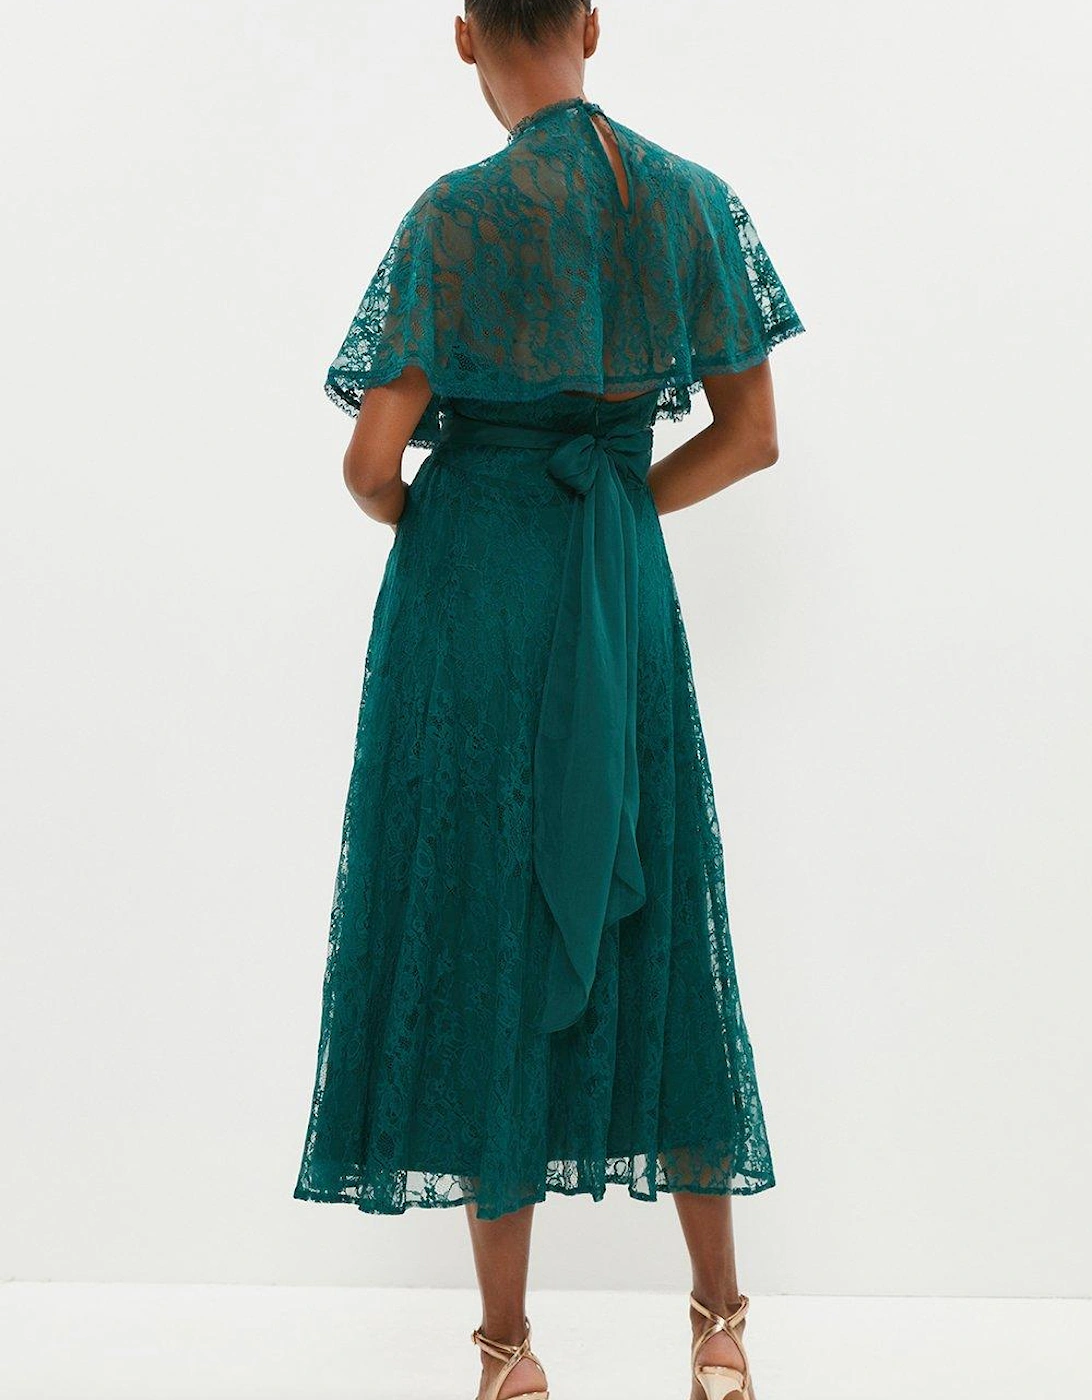 Lace Skirt Crinkle Chiffon Midi Dress